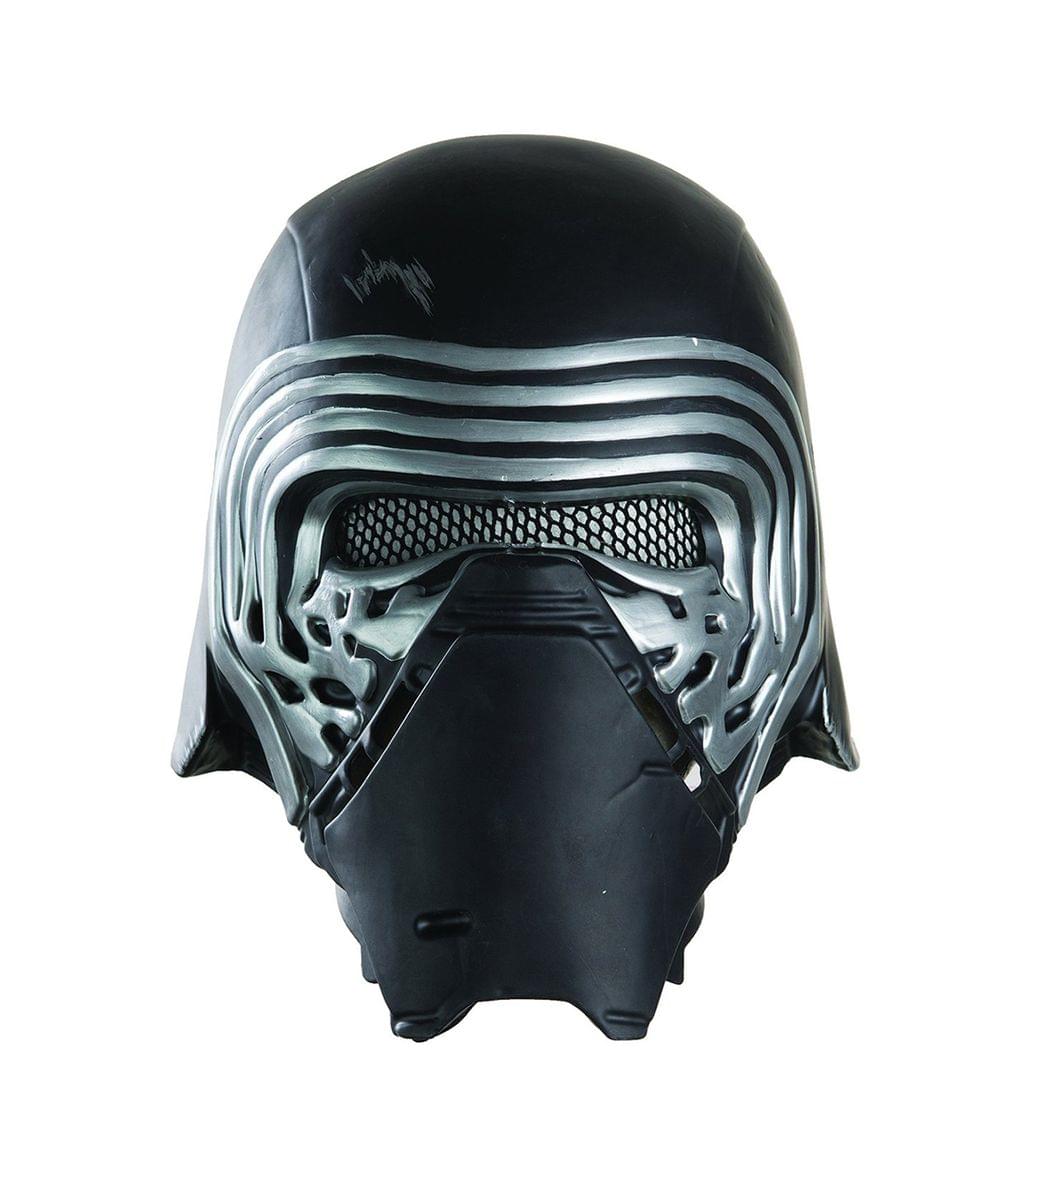 Star Wars The Force Awakens Adult Costume Accessory Kylo Ren Half Helmet